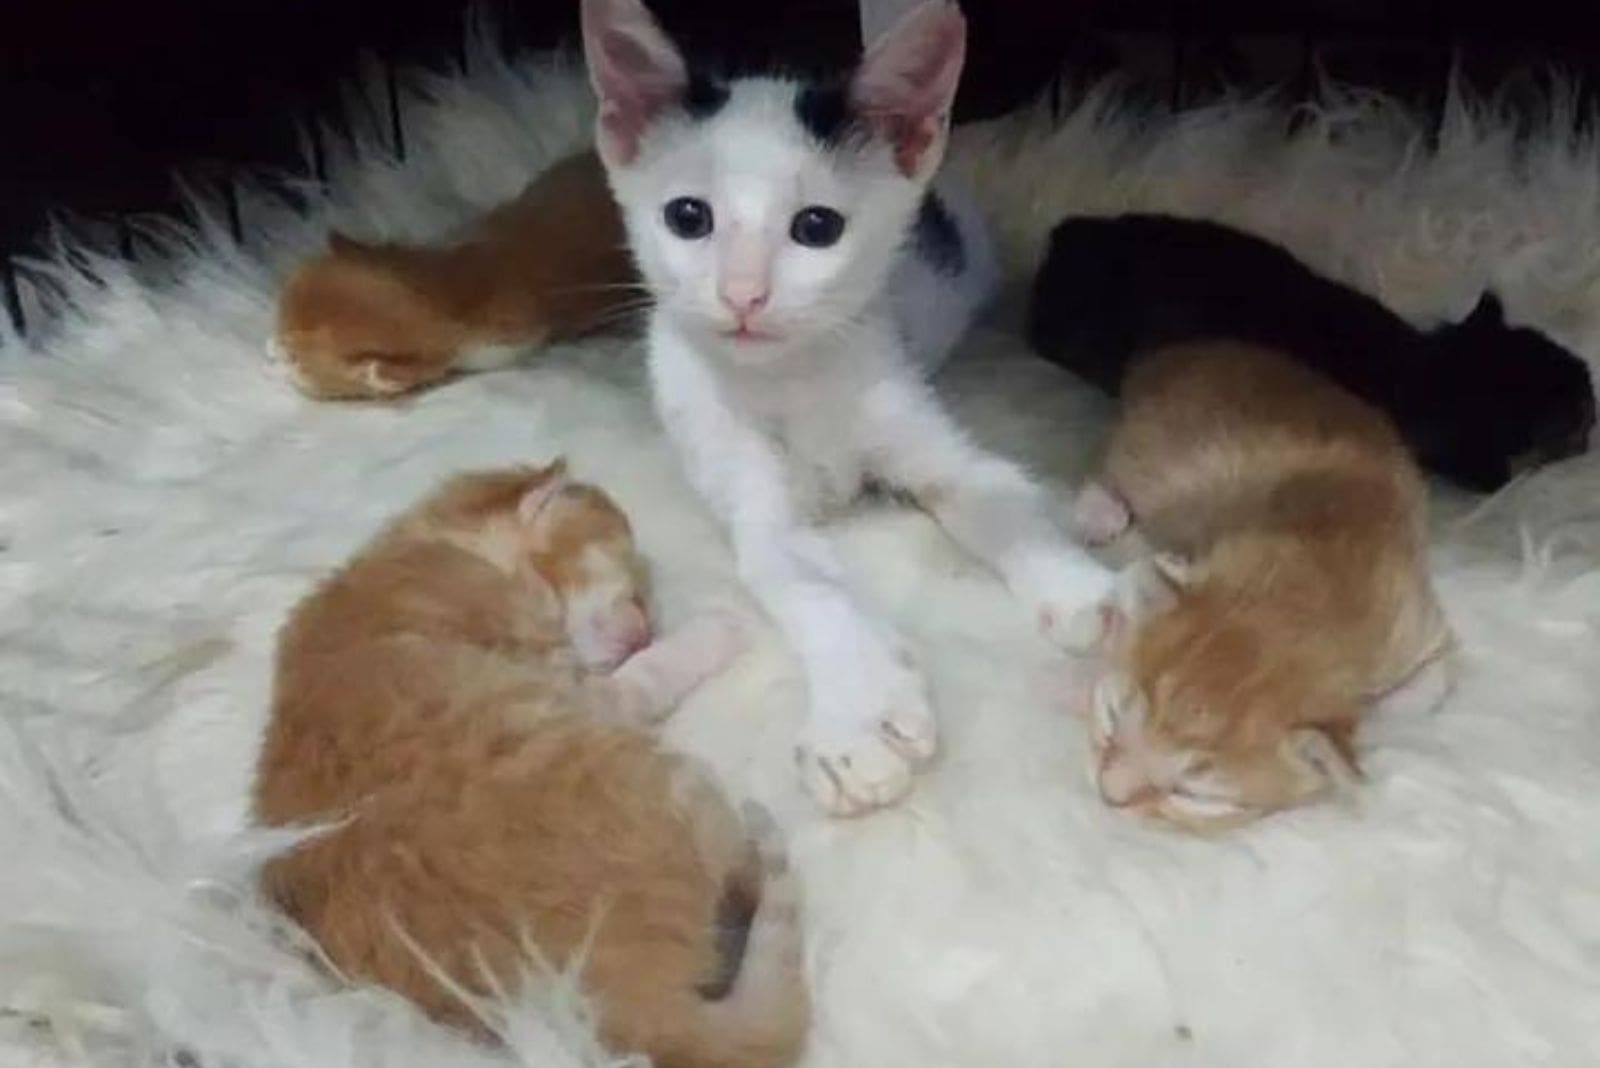 the orphaned kitten snuck in among the other kittens